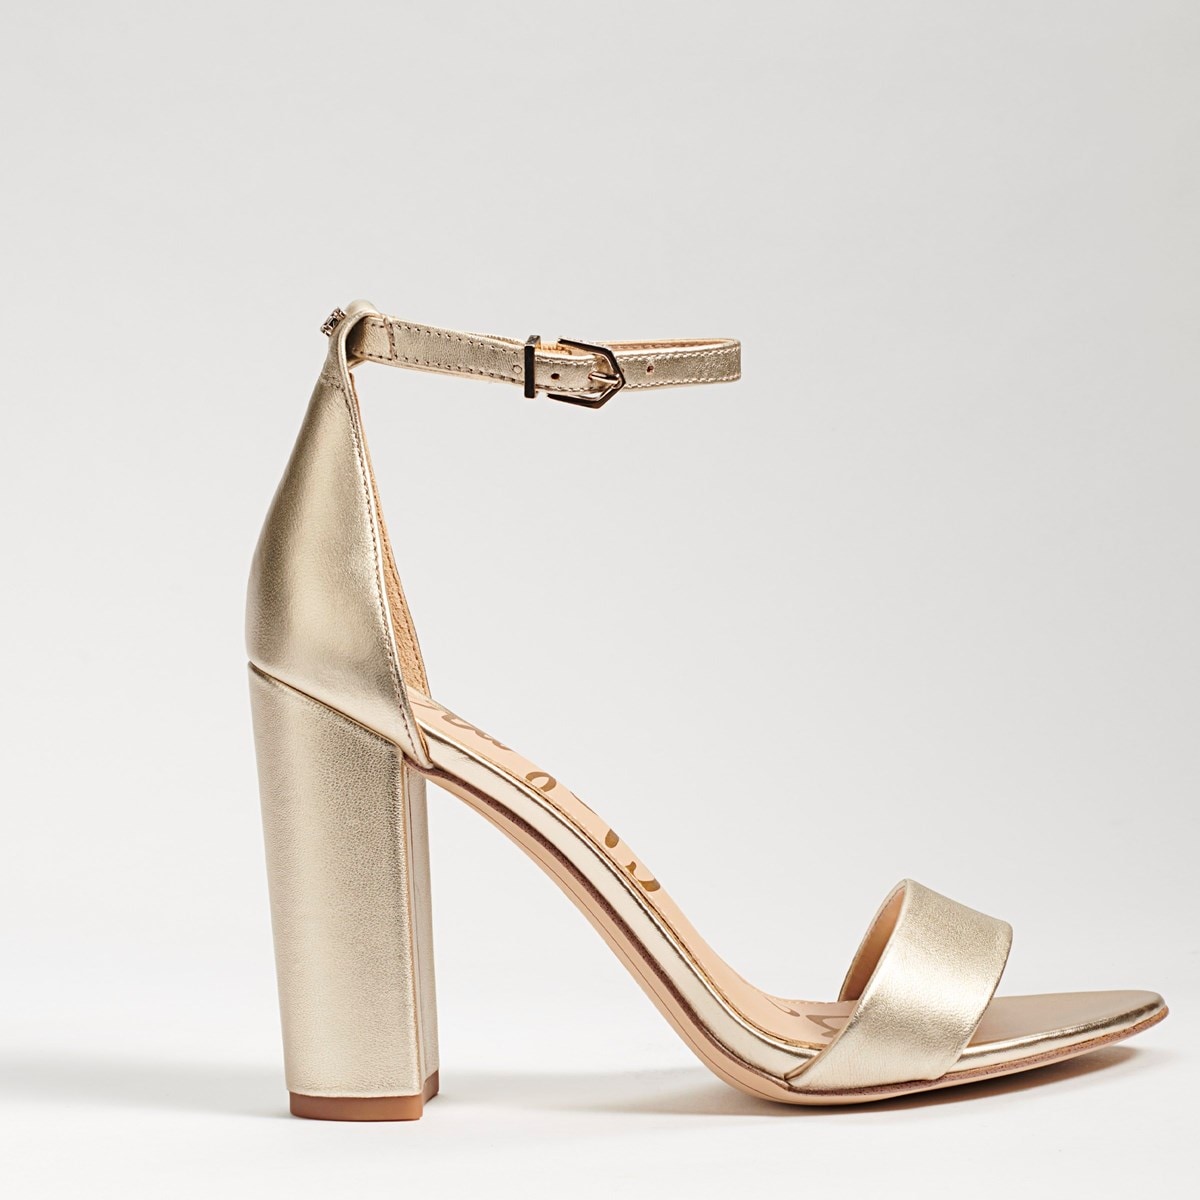 Buy > sam edelman gold strappy heels > in stock